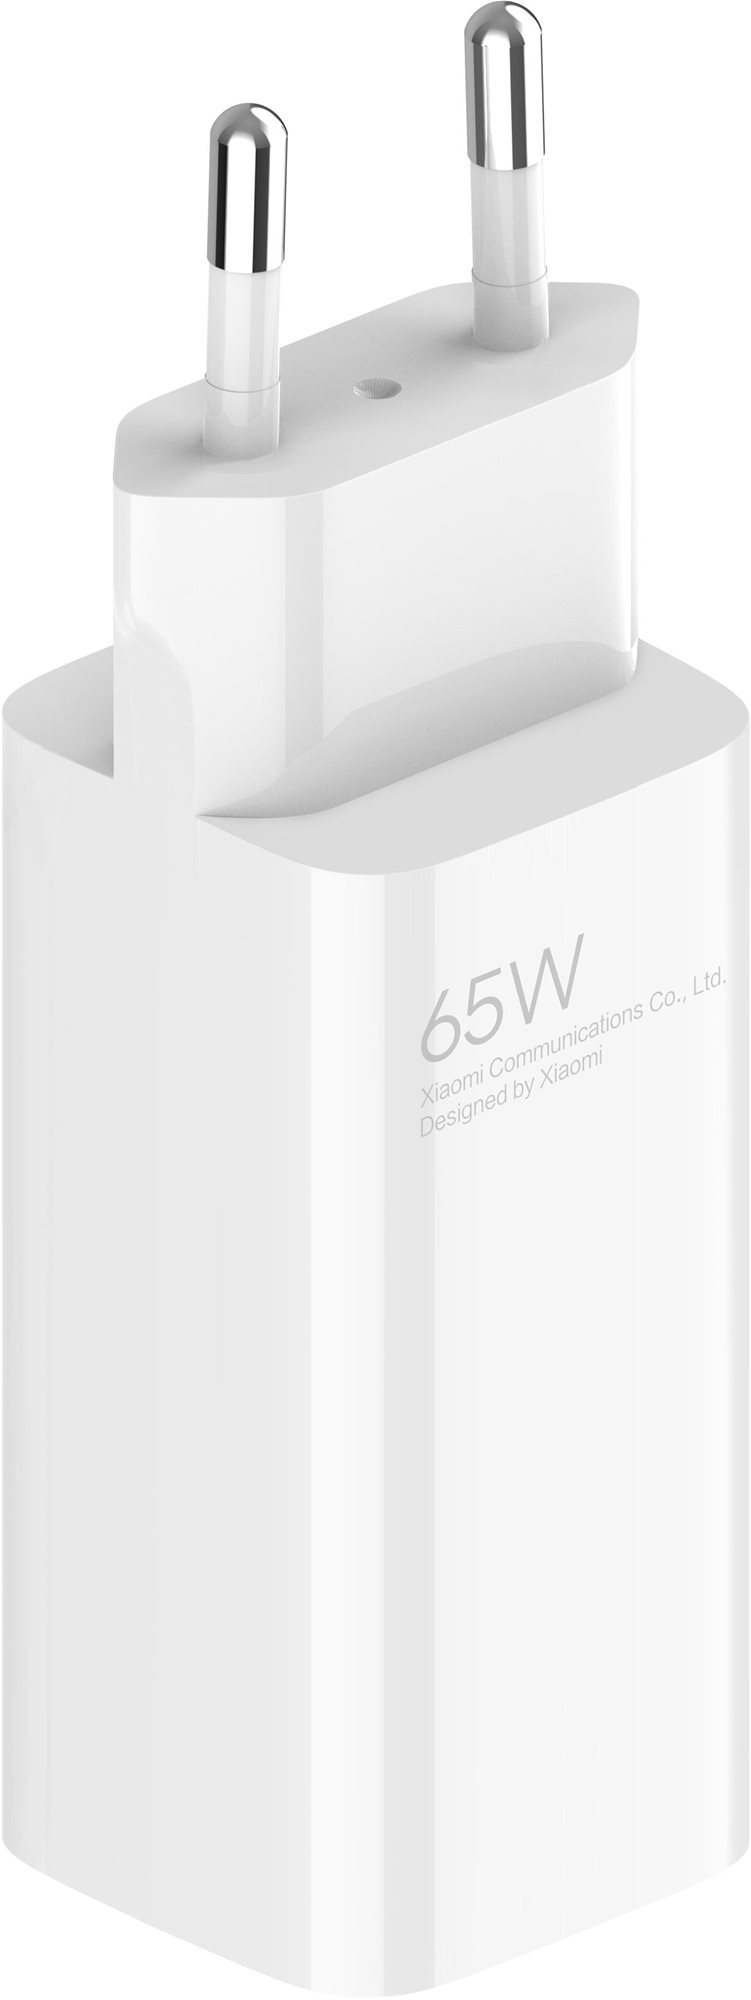 Xiaomi 65 W GaN Charger (Type-A + Type-C) EU